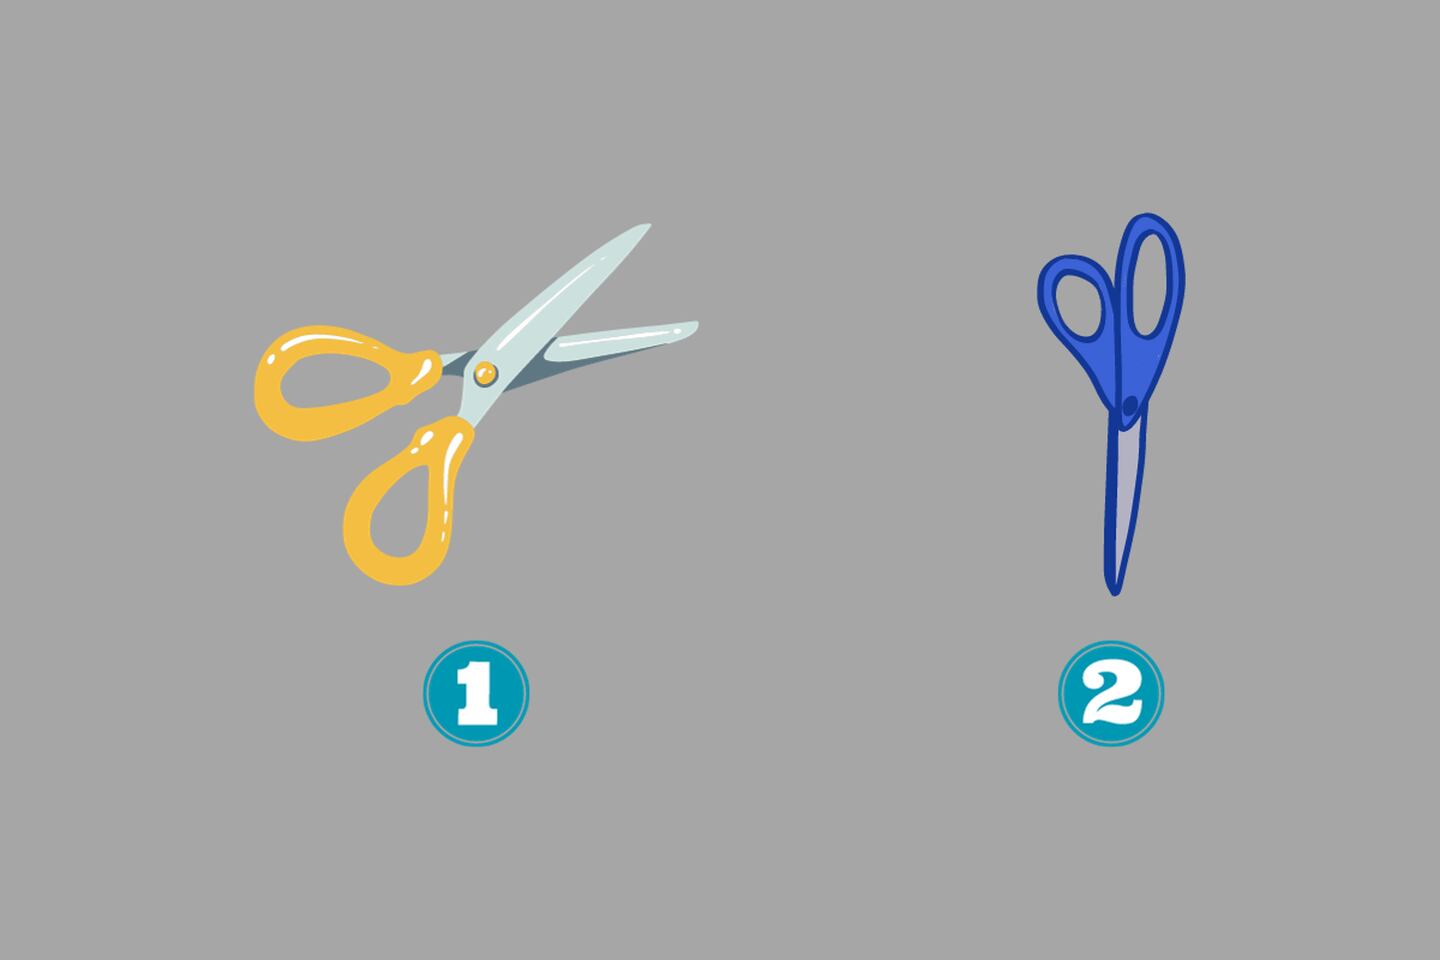 En este test de personalidad hay dos opciones: una tijera amarilla abierta, y otra tijera azul cerrada.